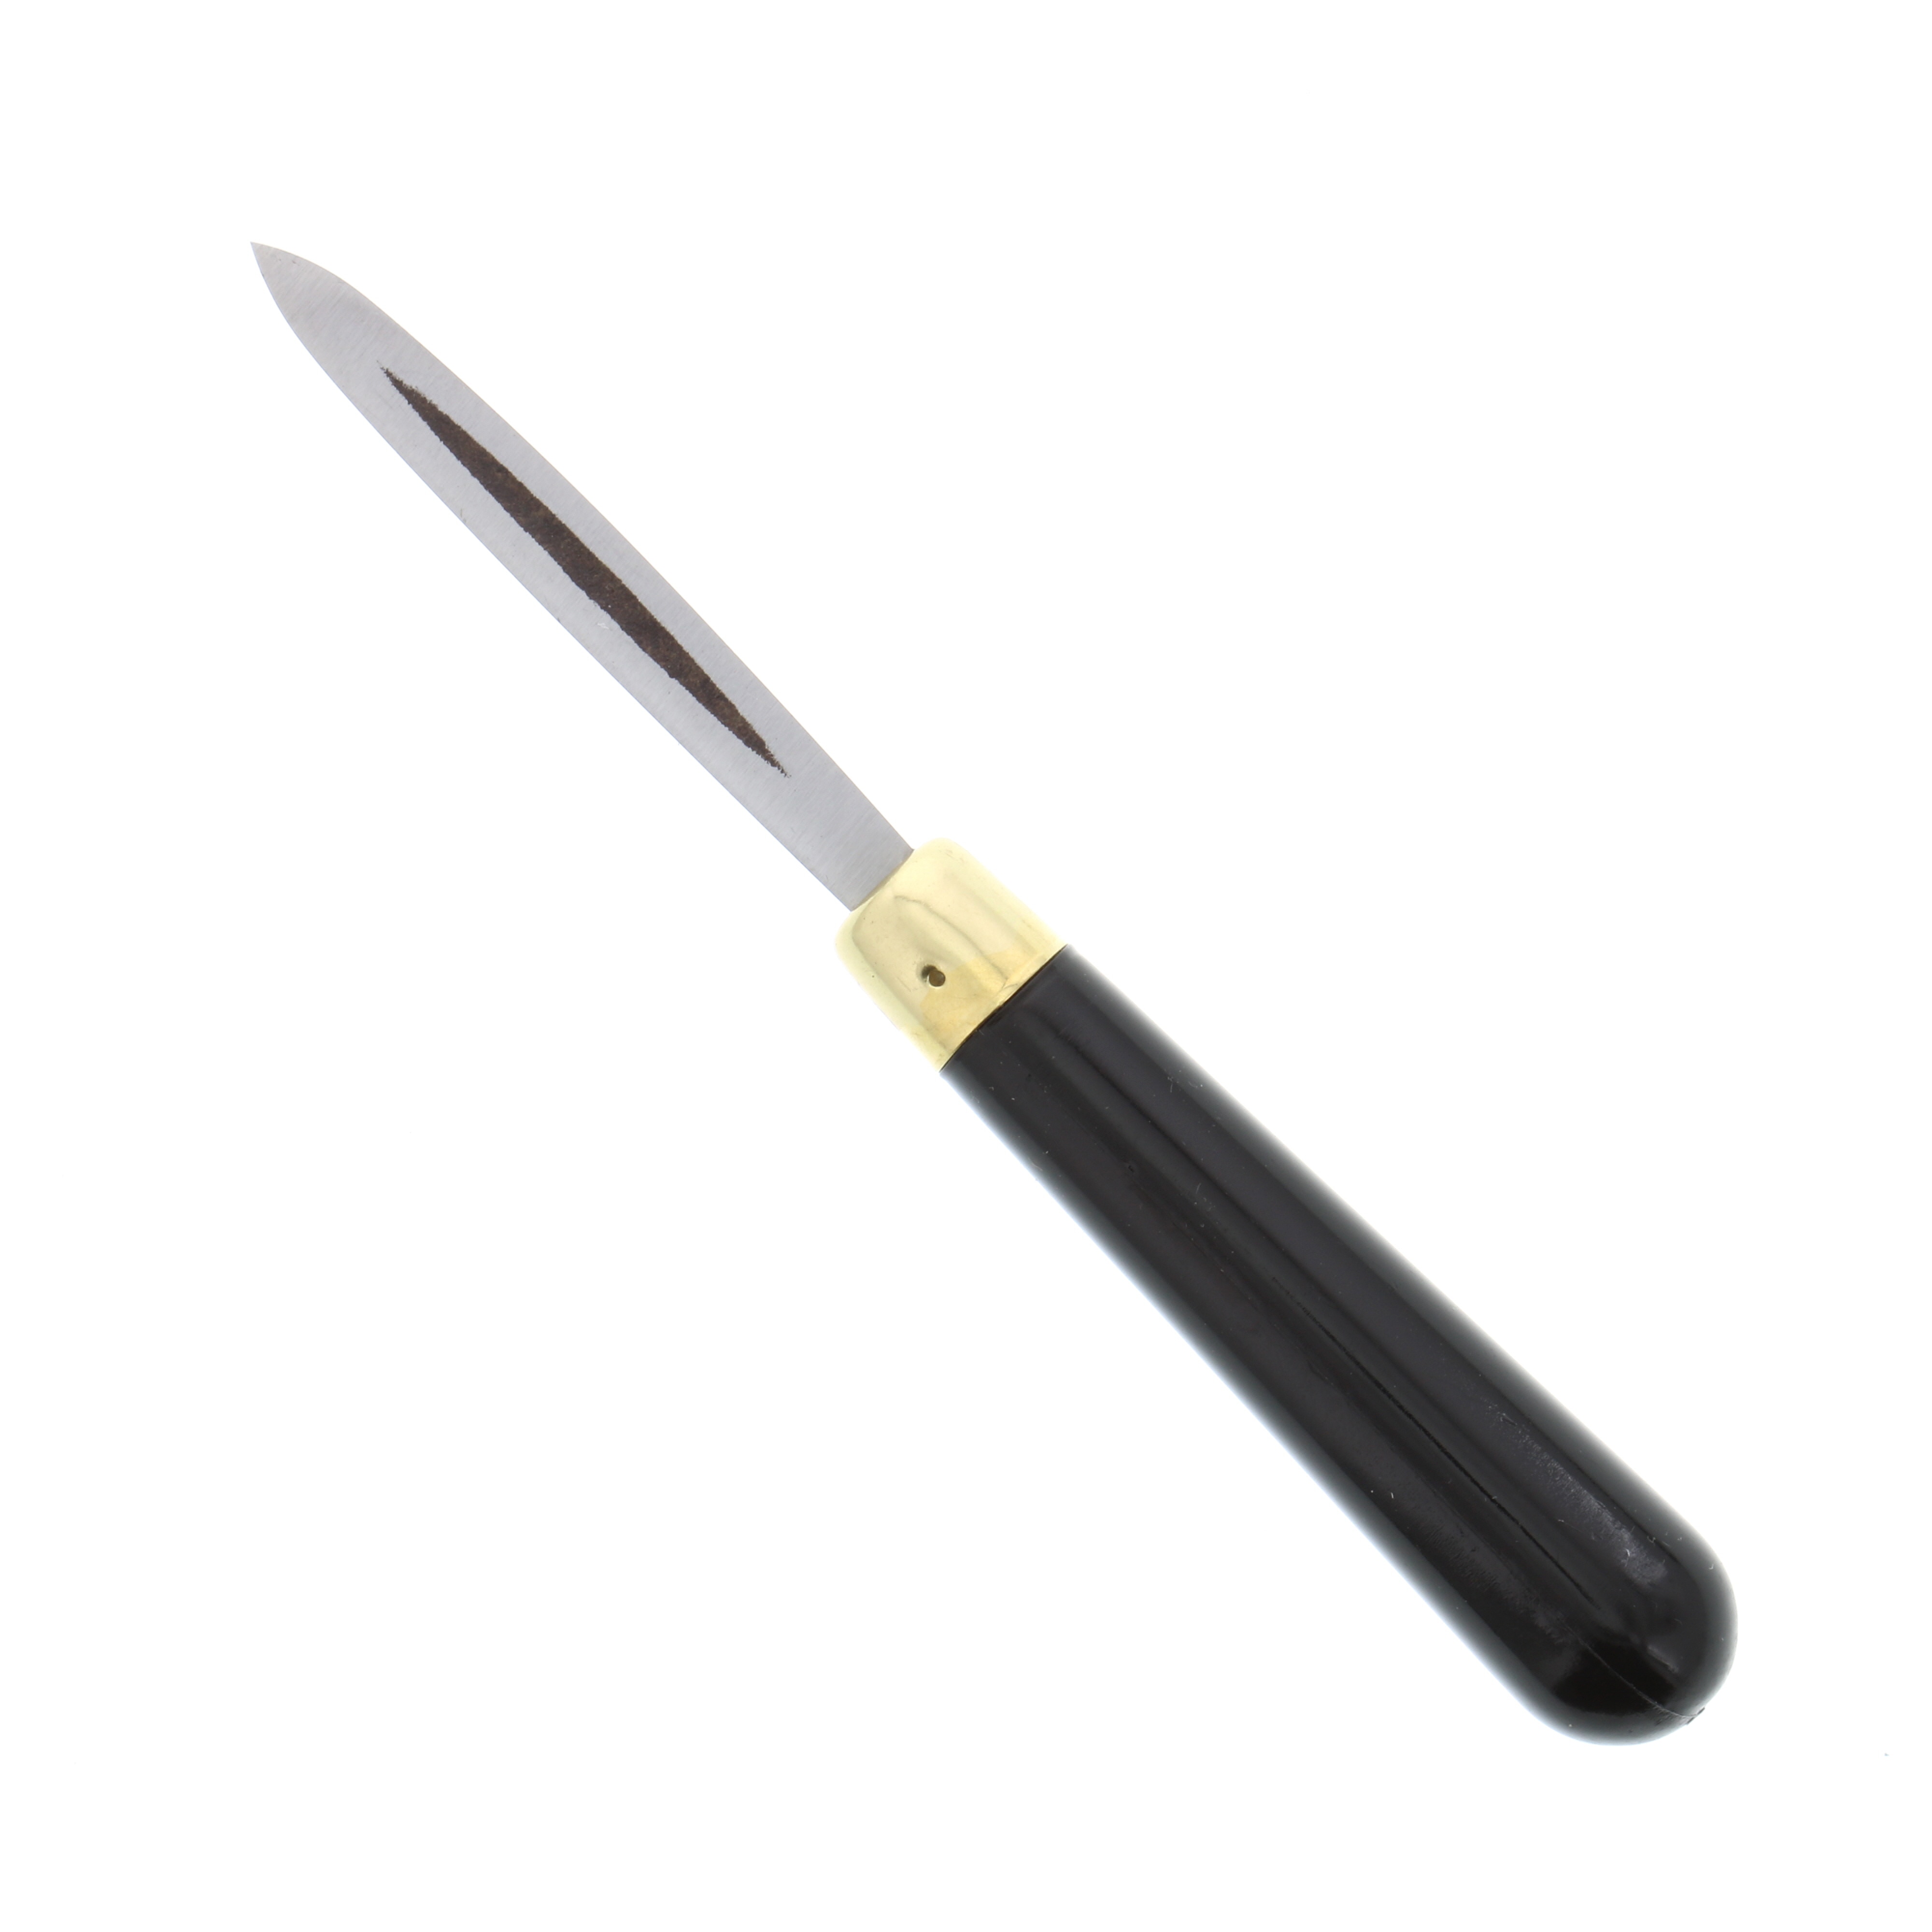 RGM Etching Tool, Scraper, #602 Tip